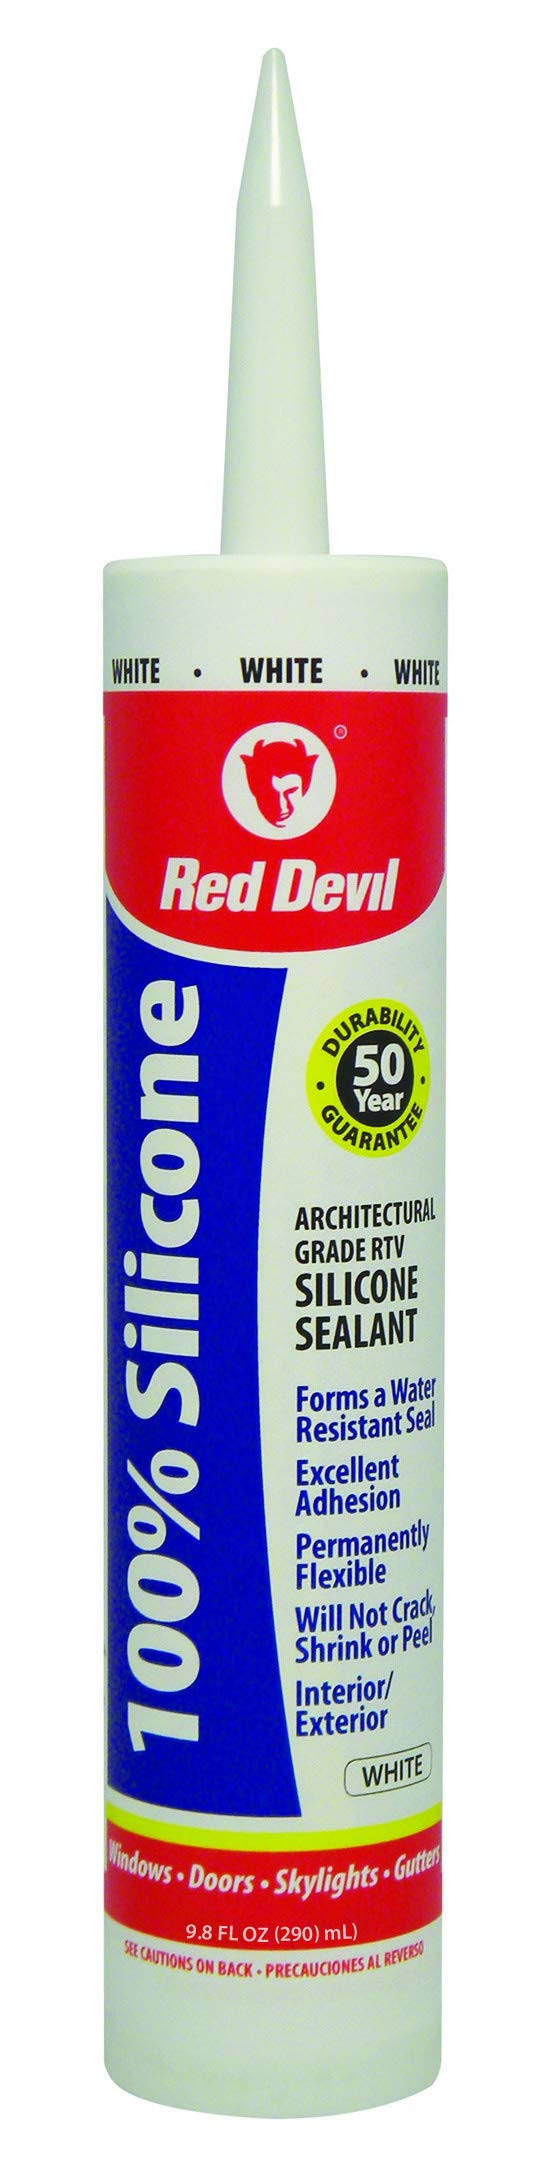 Red Devil 100% Silicone Sealant - White